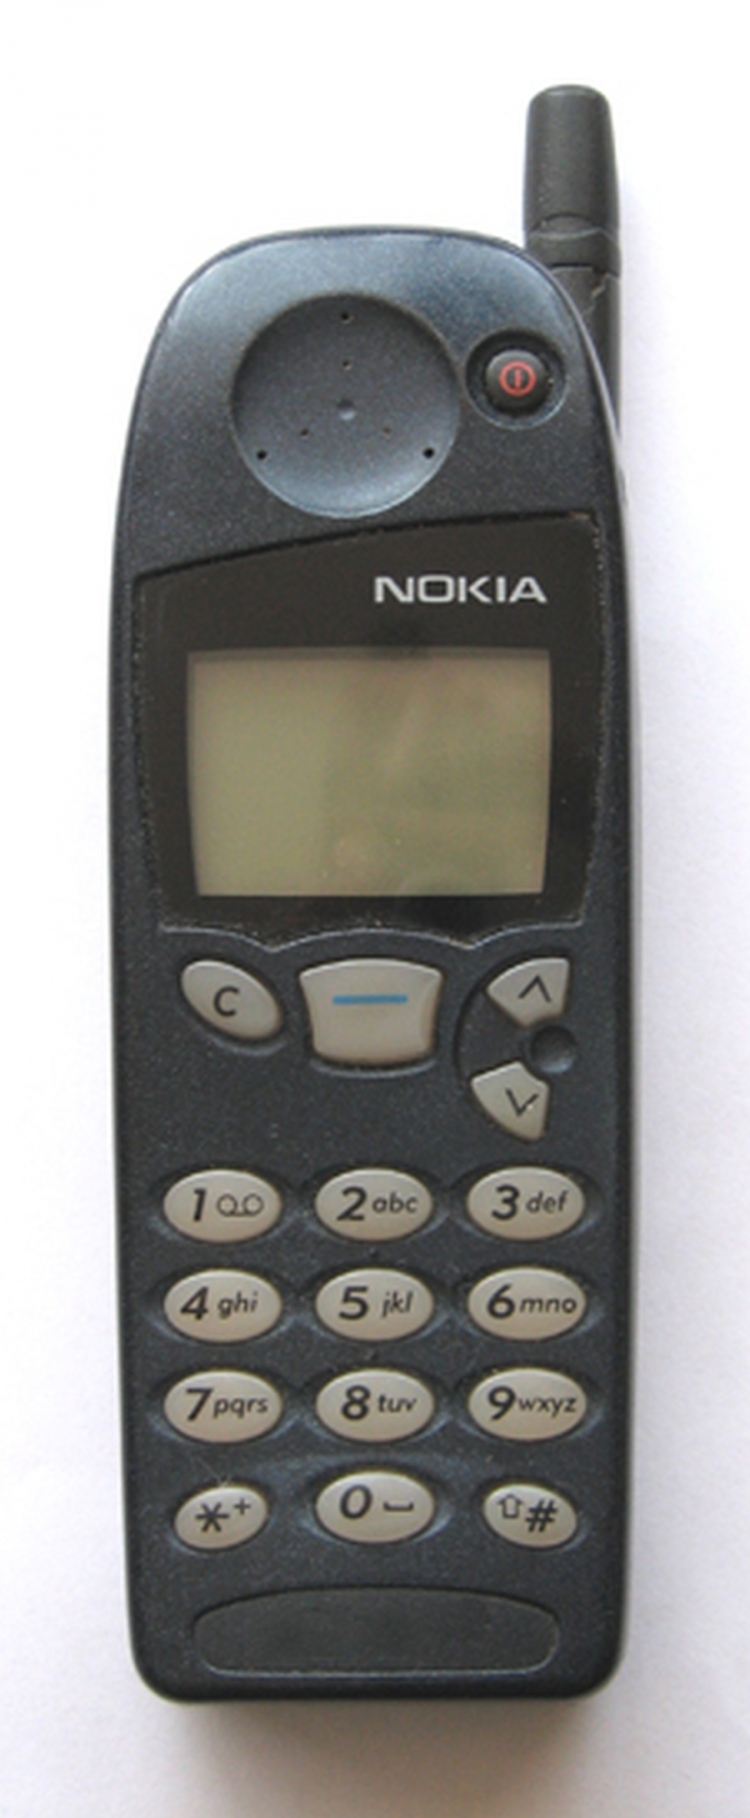 1998. godina - Nokia 5110 / Najpopularniji mobilni telefon tog vremena.